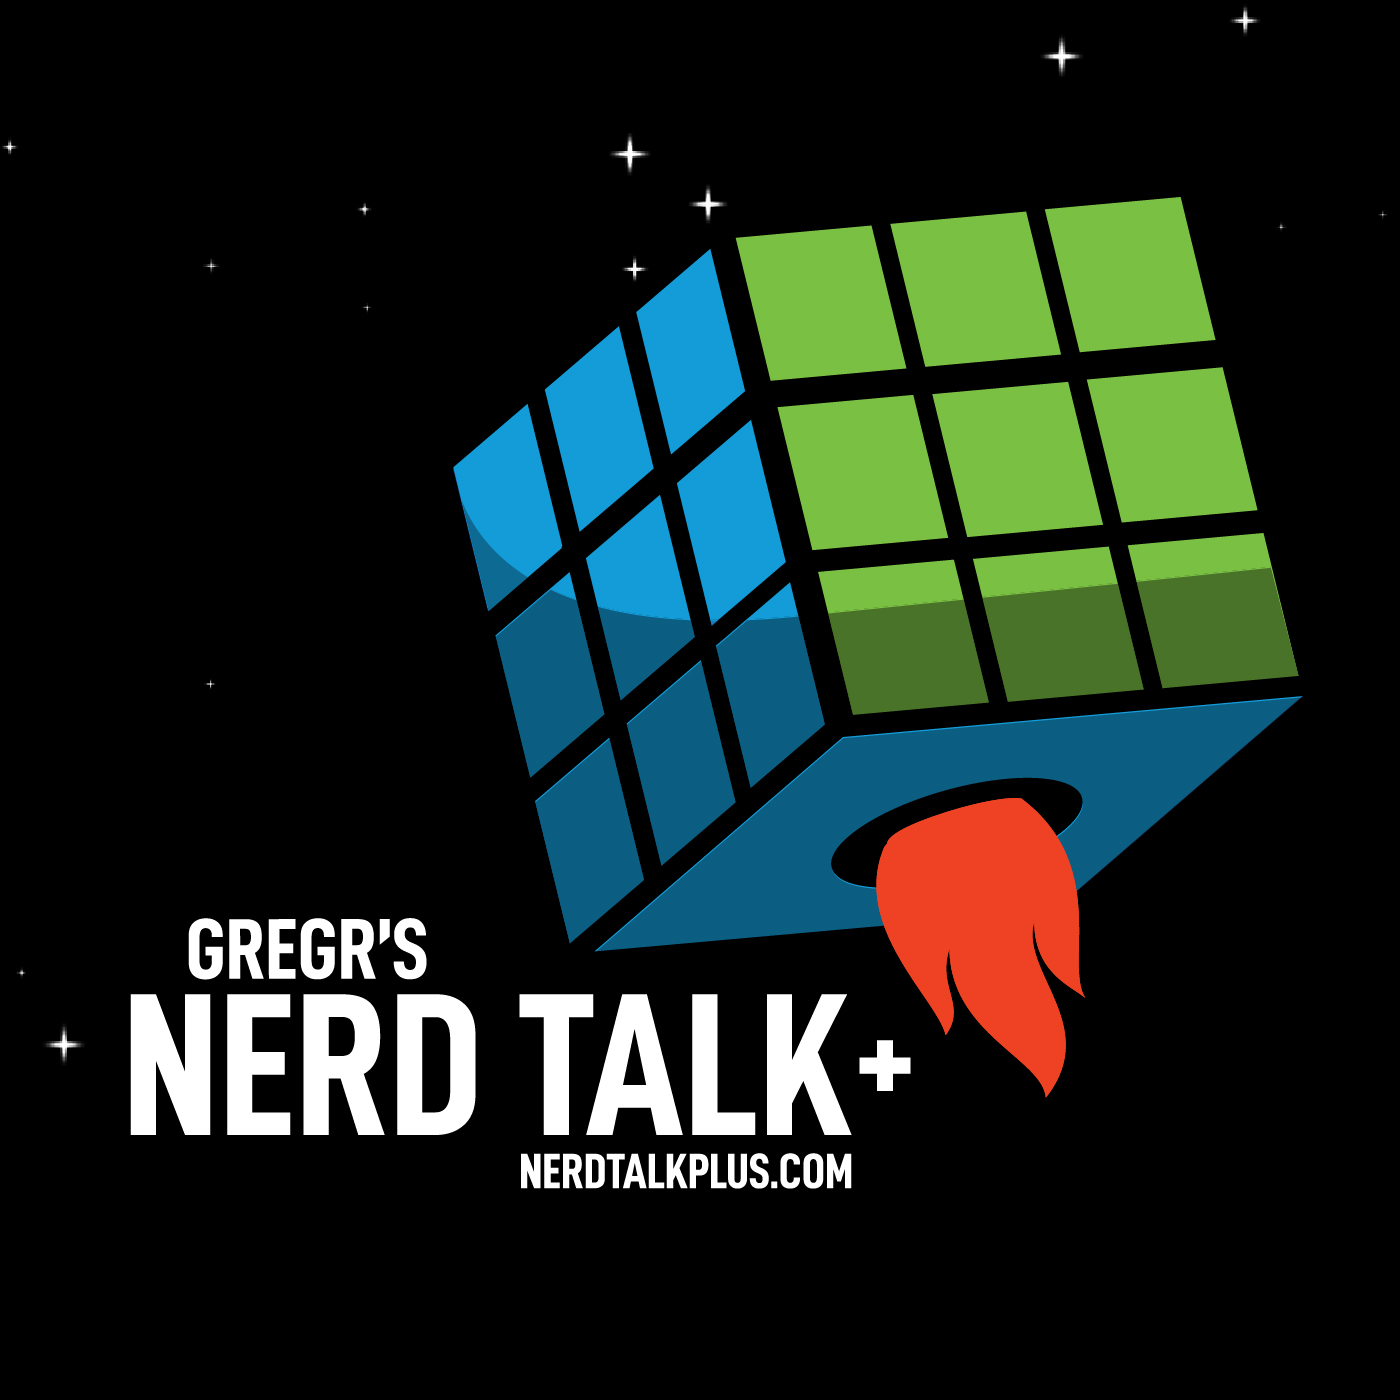 March 28, 2023 - Nerd Talk+